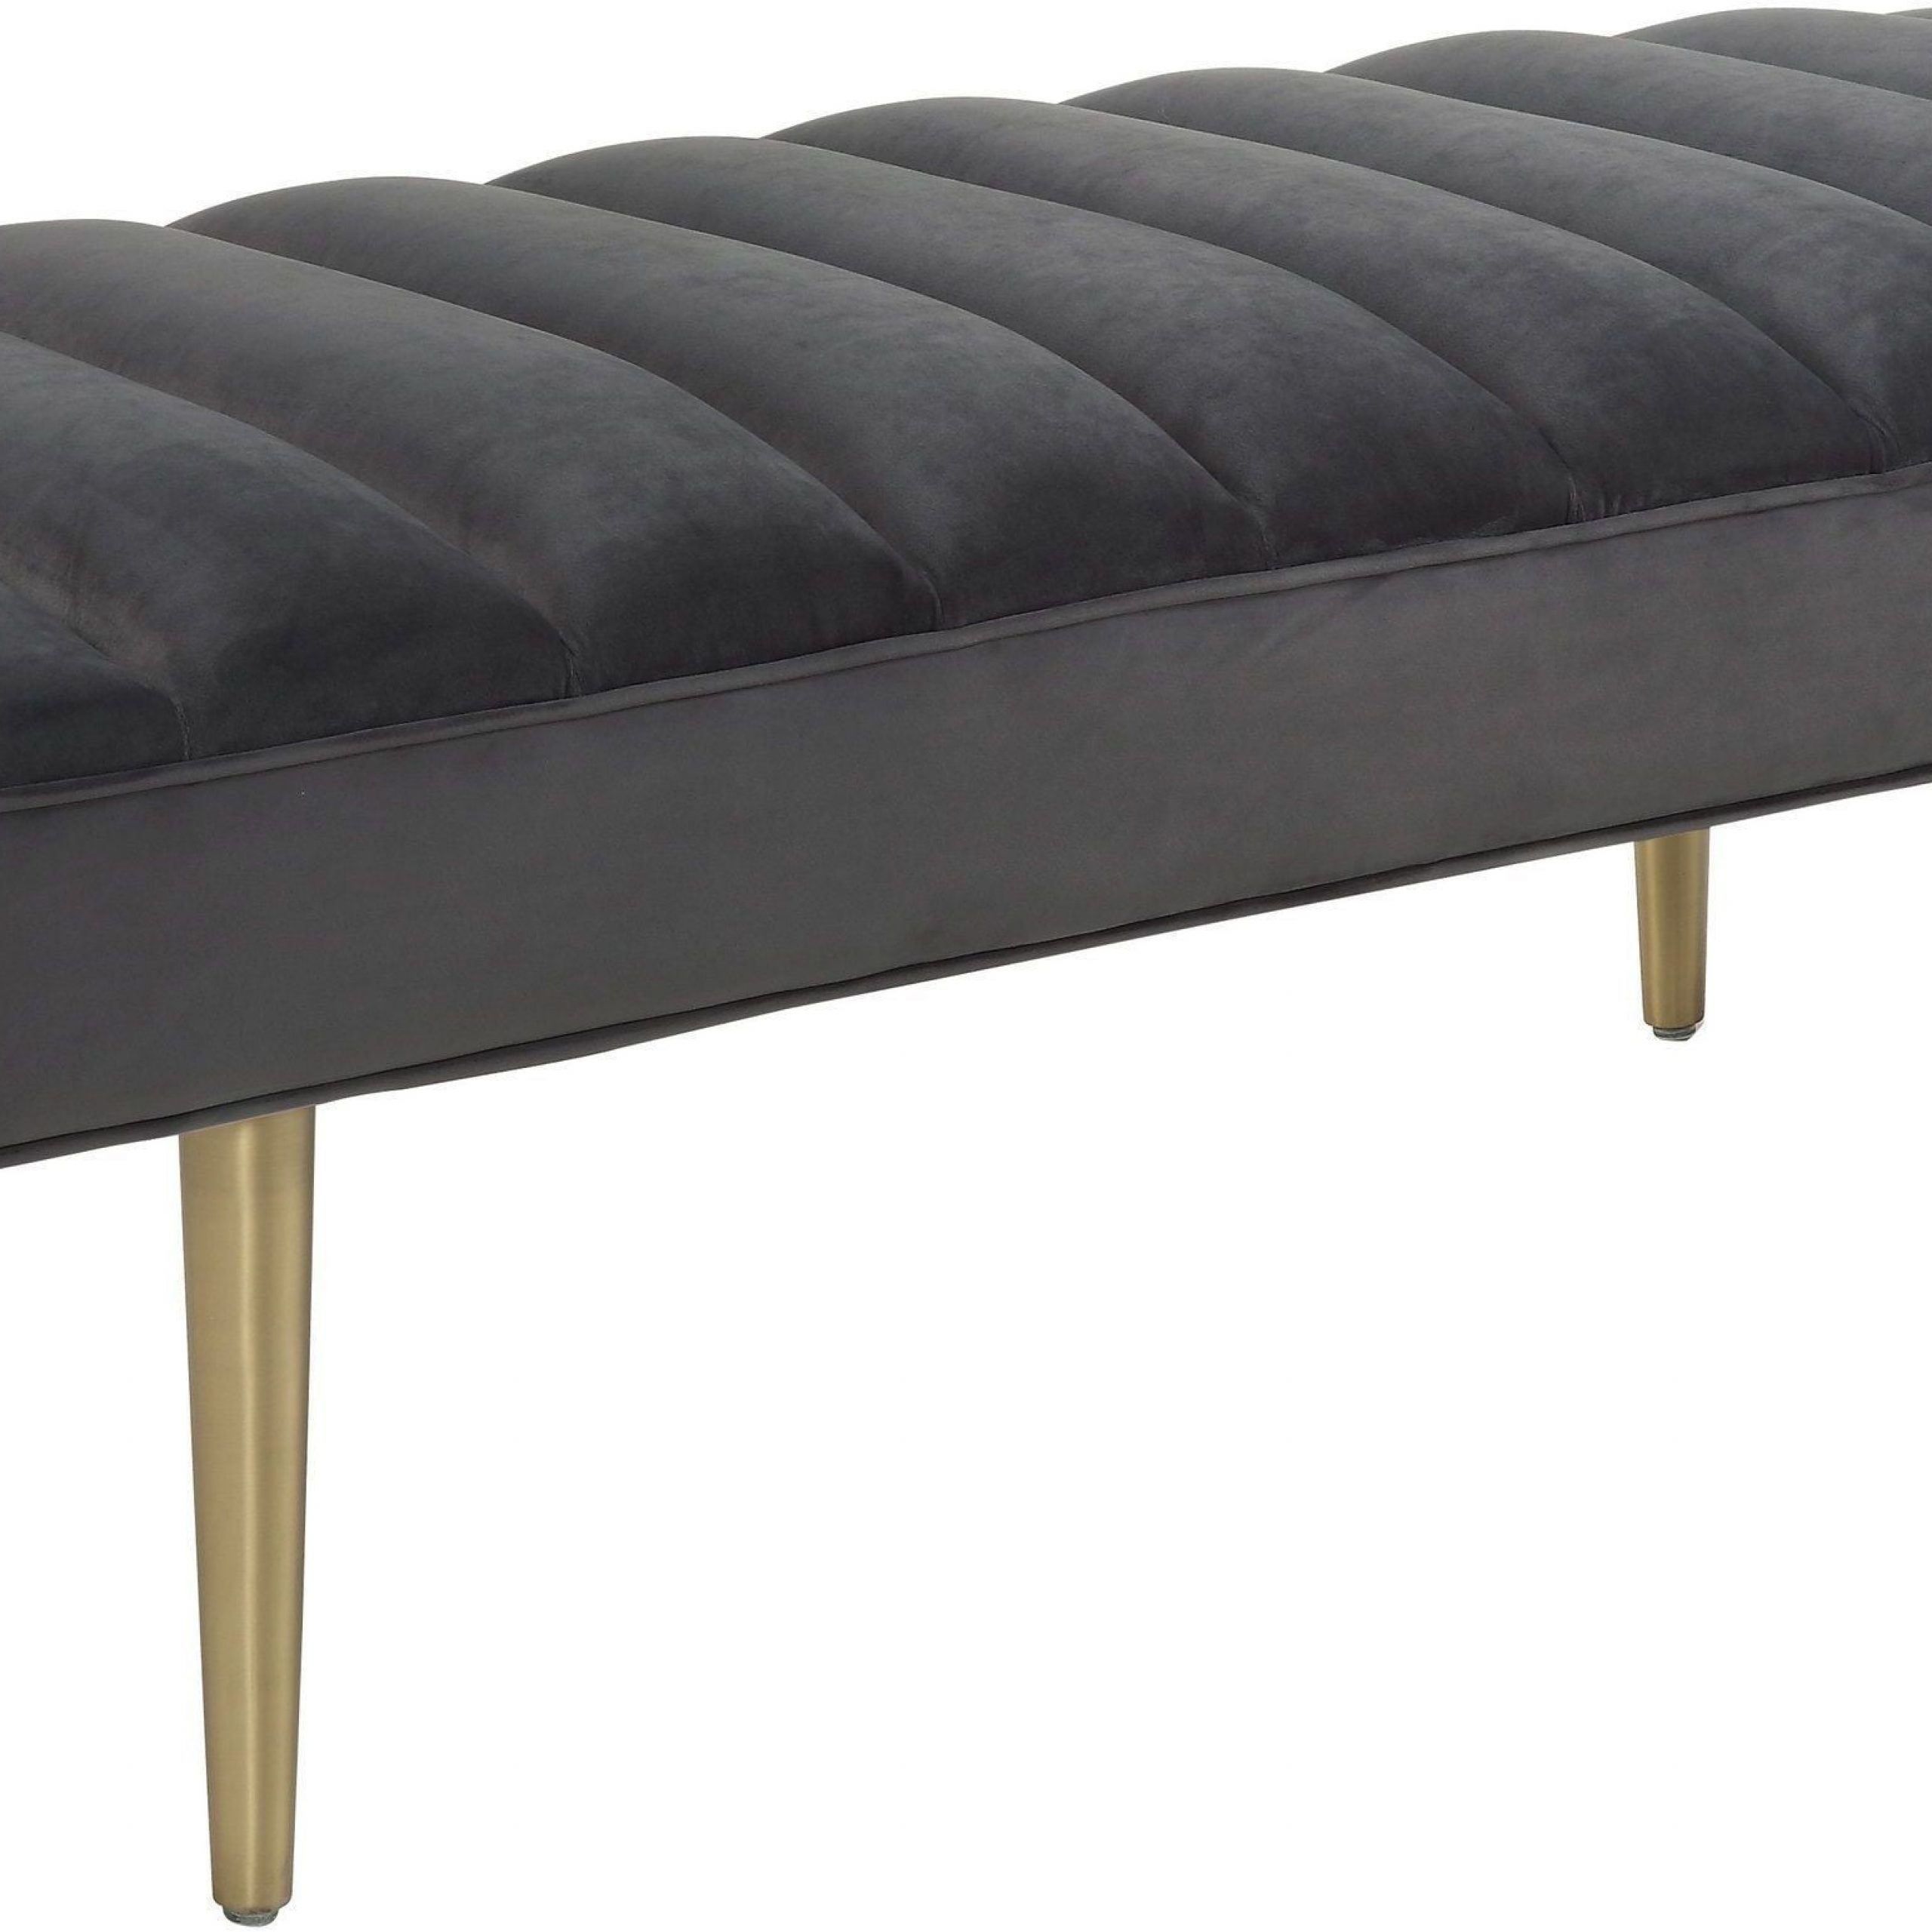 Jax Grey Velvet Bench From Tov | Coleman Furniture In Rivet Gray Velvet Fabric Bench (View 15 of 20)